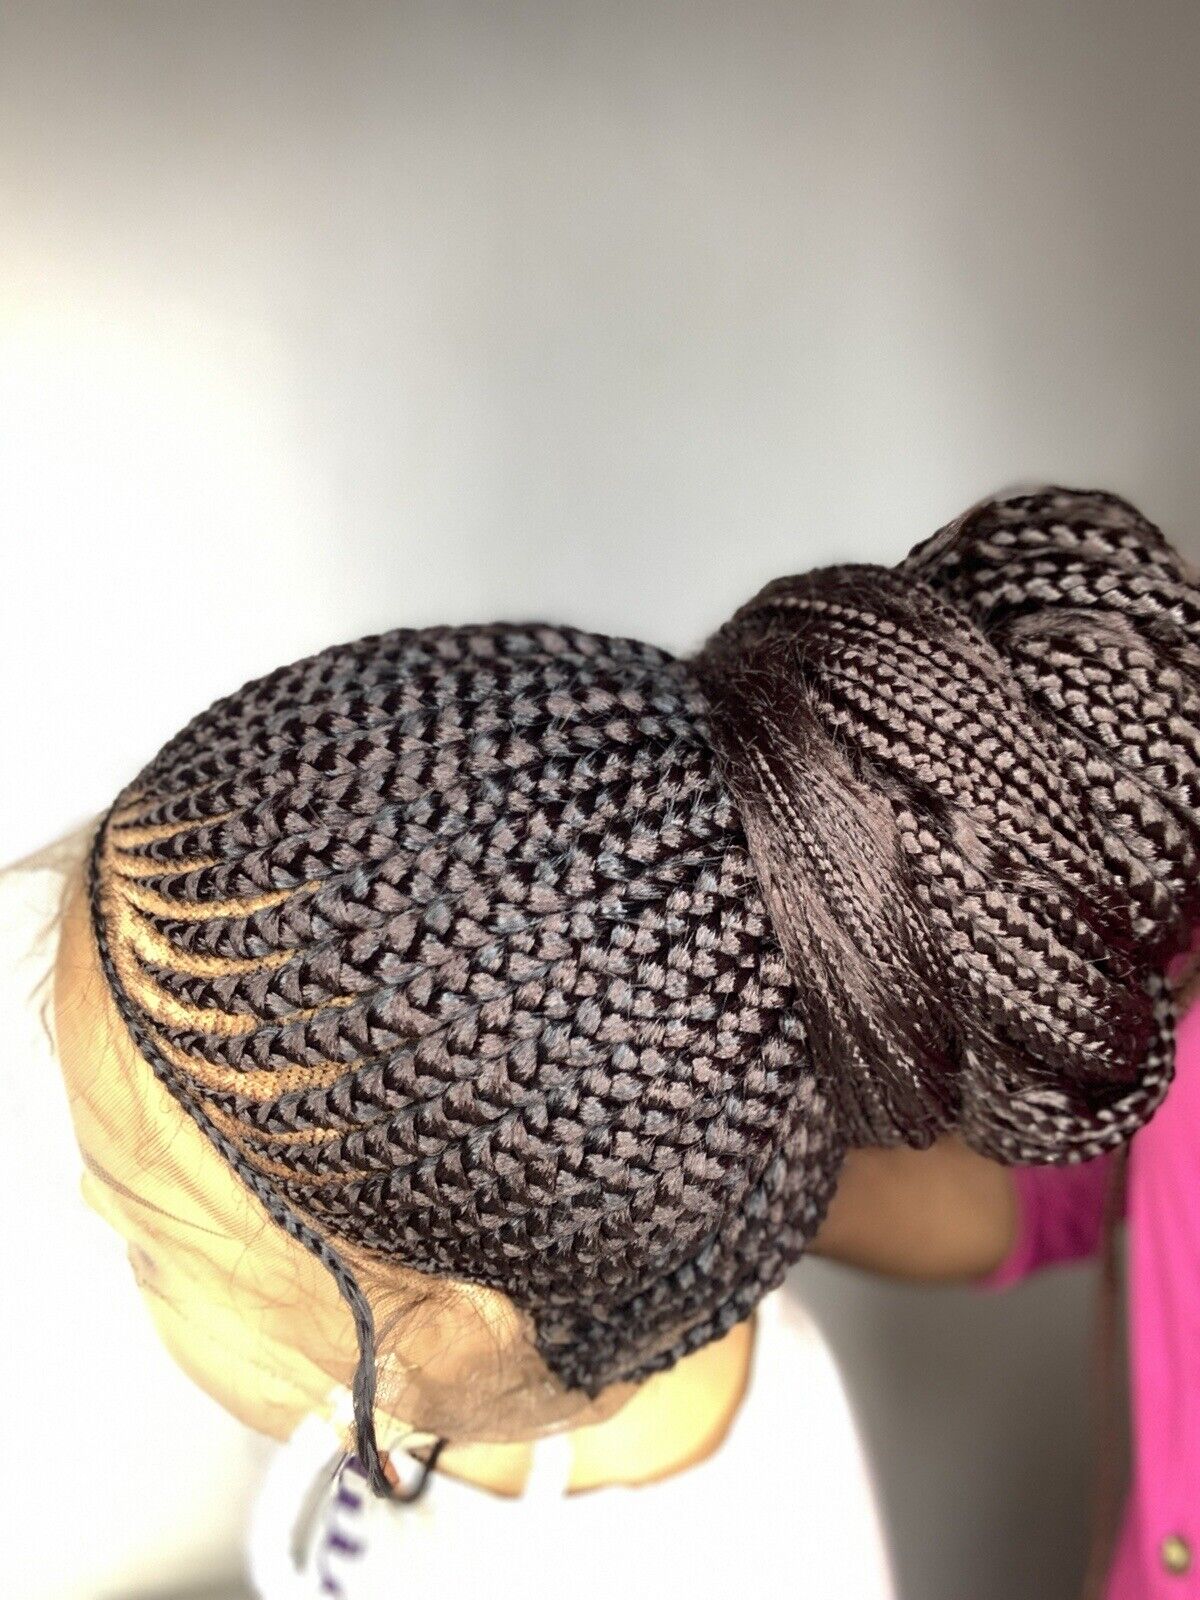 Braided wig Updo, Box Braids,Full Lace braided wig,Braidedwig, Black Women Hair